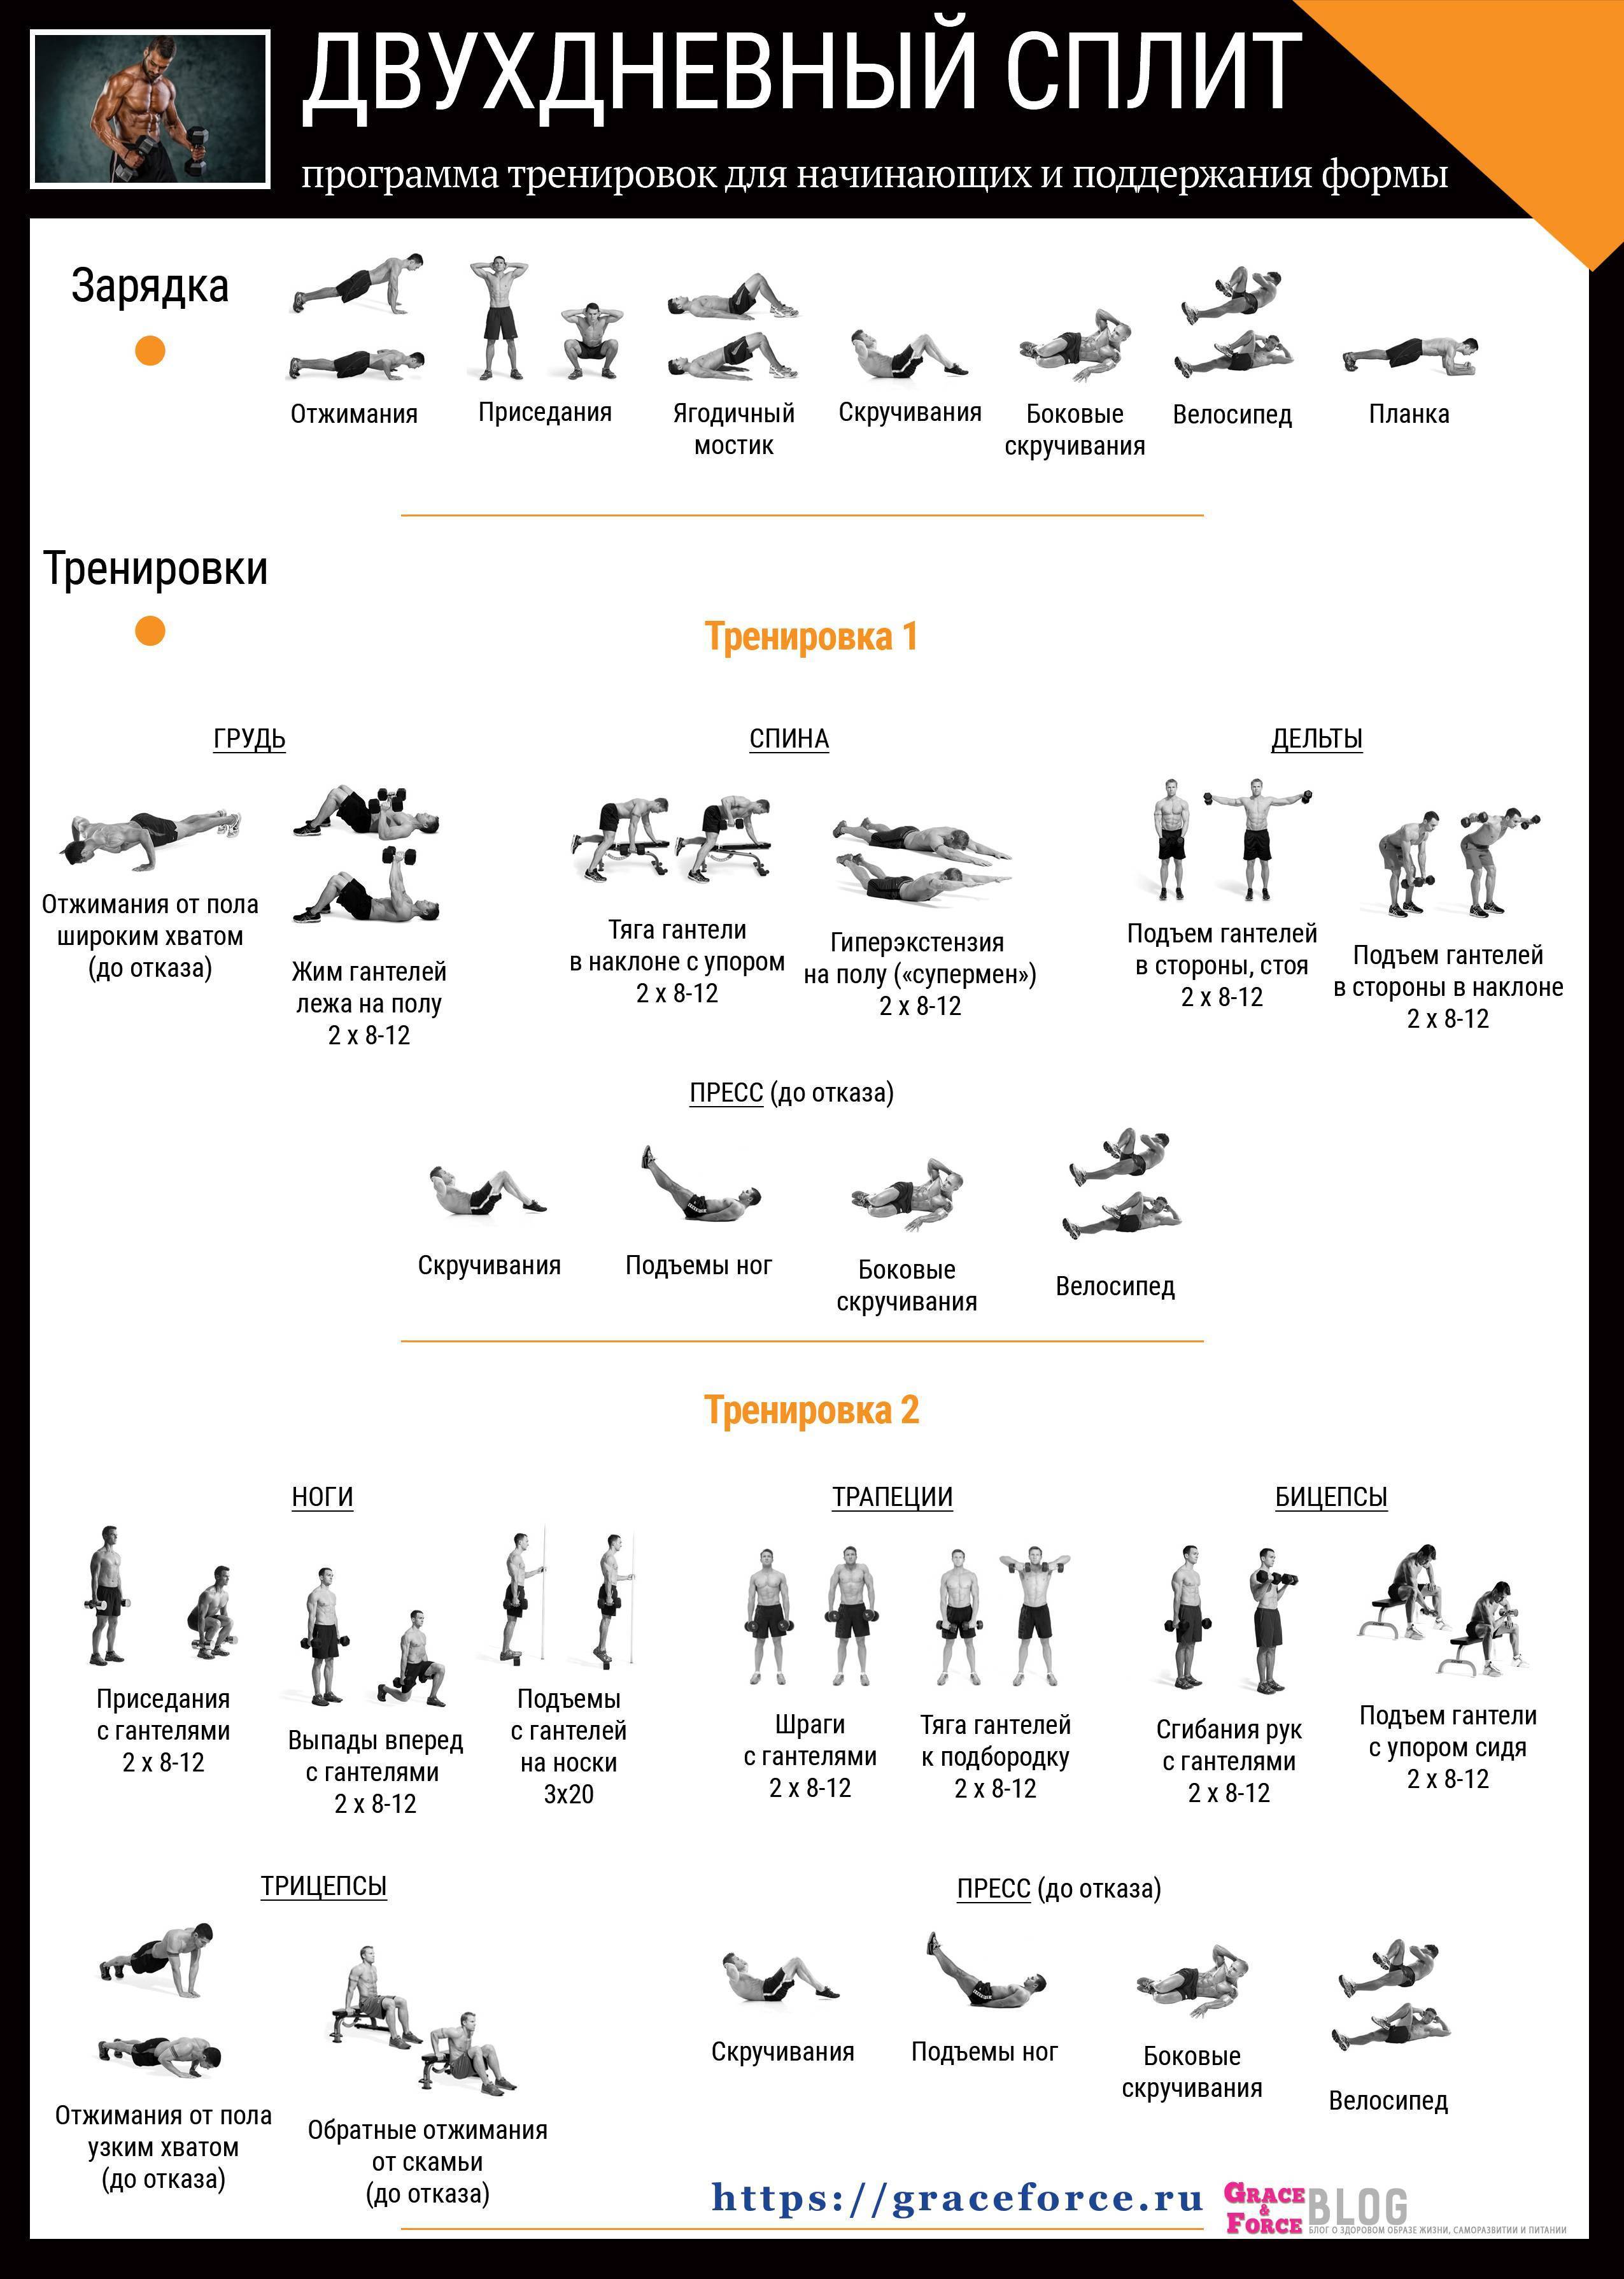 Программа тренировок для набора мышечной массы 3 раза в неделю: трехдневные комплексы базовых упражнений для рельефа на все группы мышц для мужчин и женщин, новичков